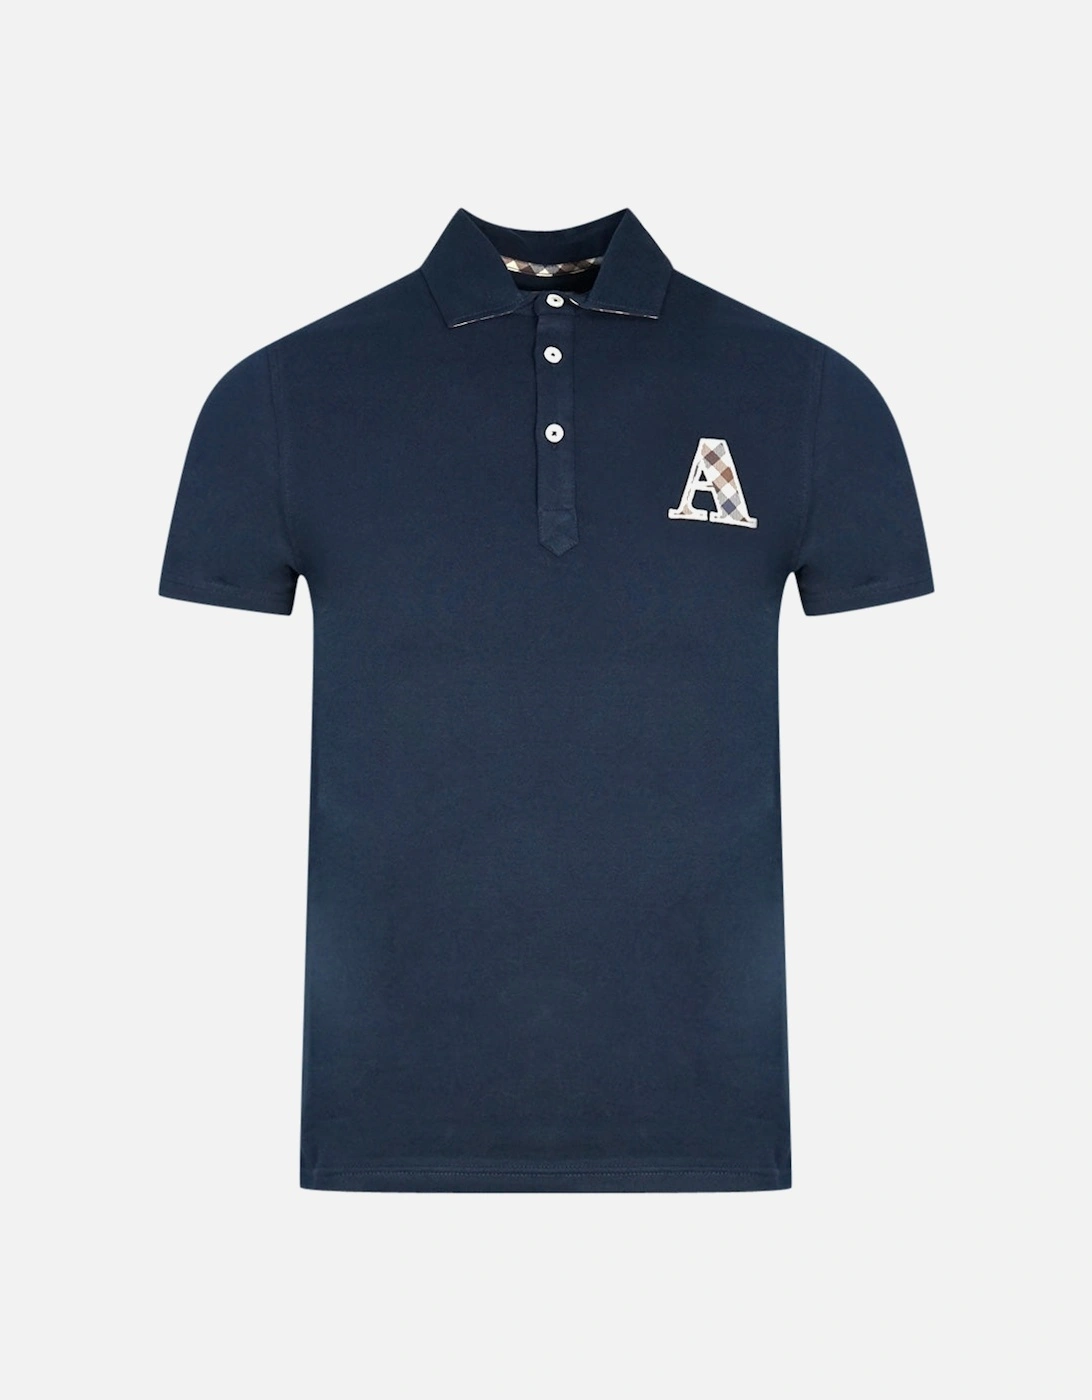 Check A Logo Navy Blue Polo Shirt, 3 of 2